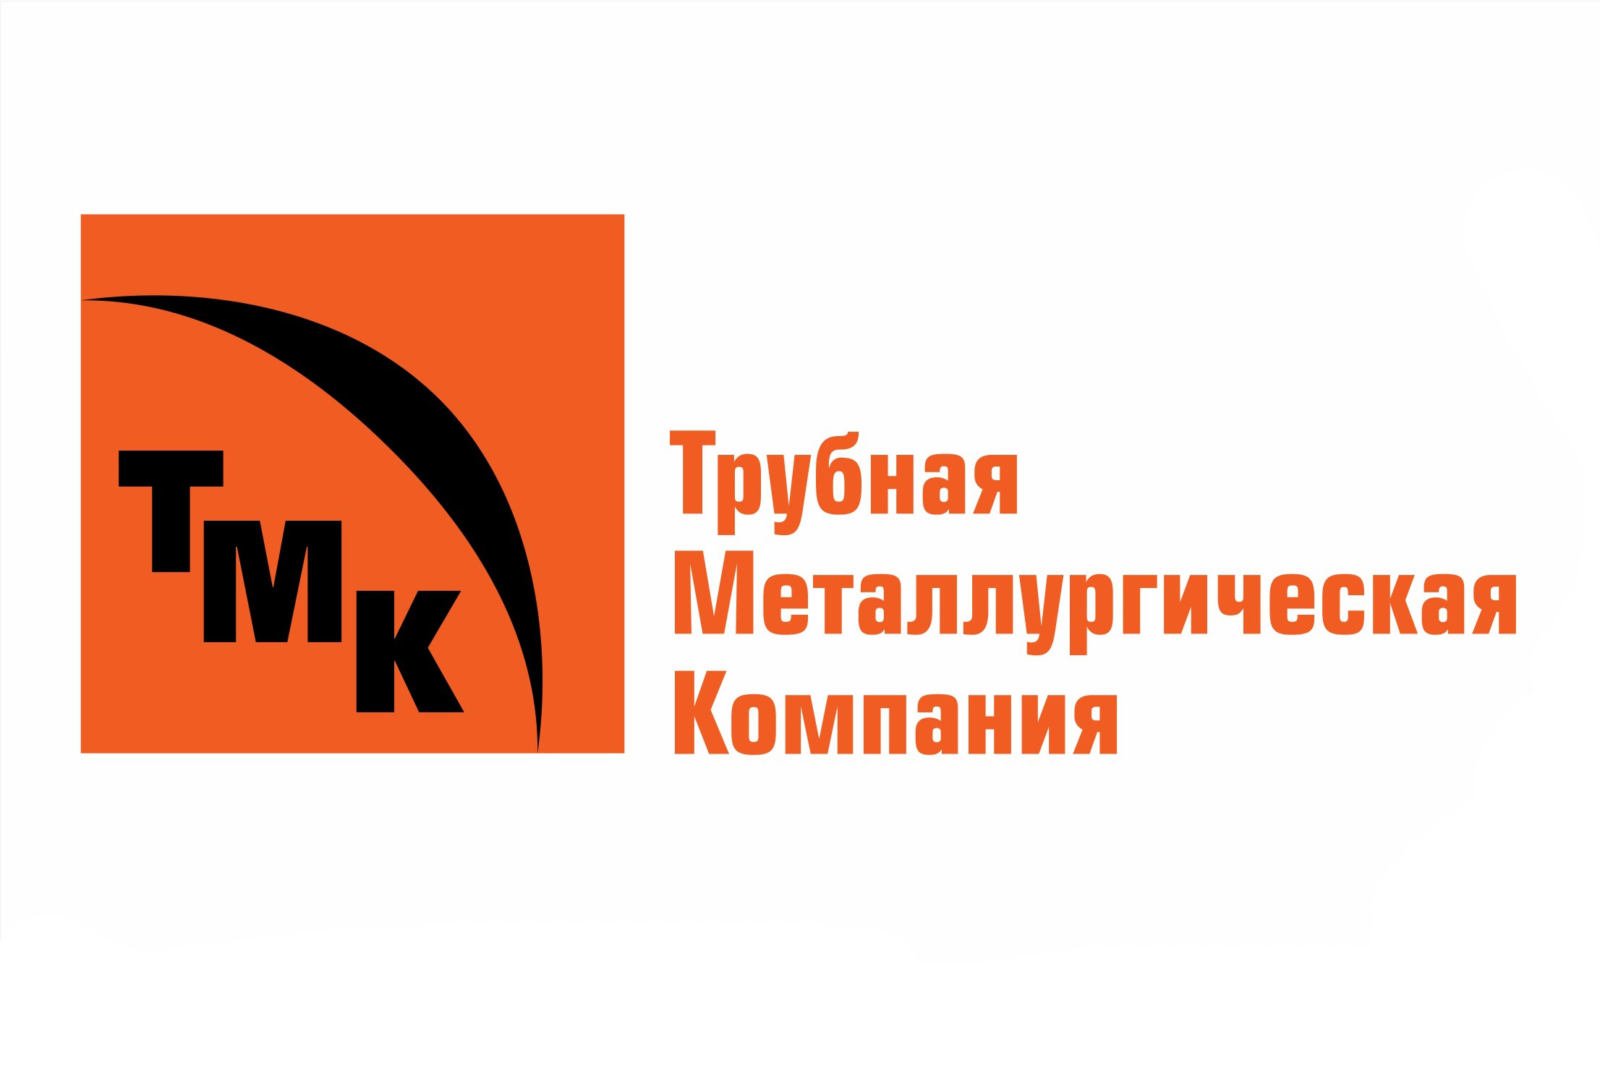 Trubnaya_Metallurgicheskaya_Kompaniya